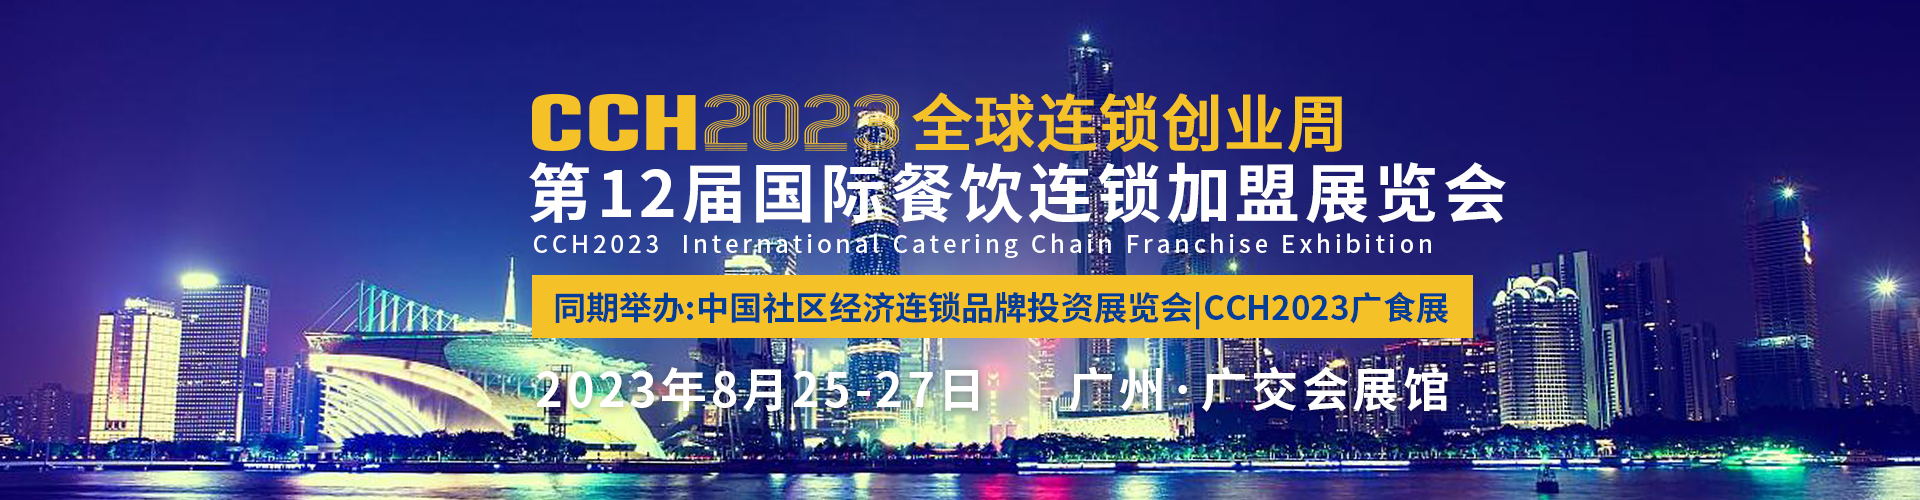 2023CRFE济南国际连锁加盟展览会